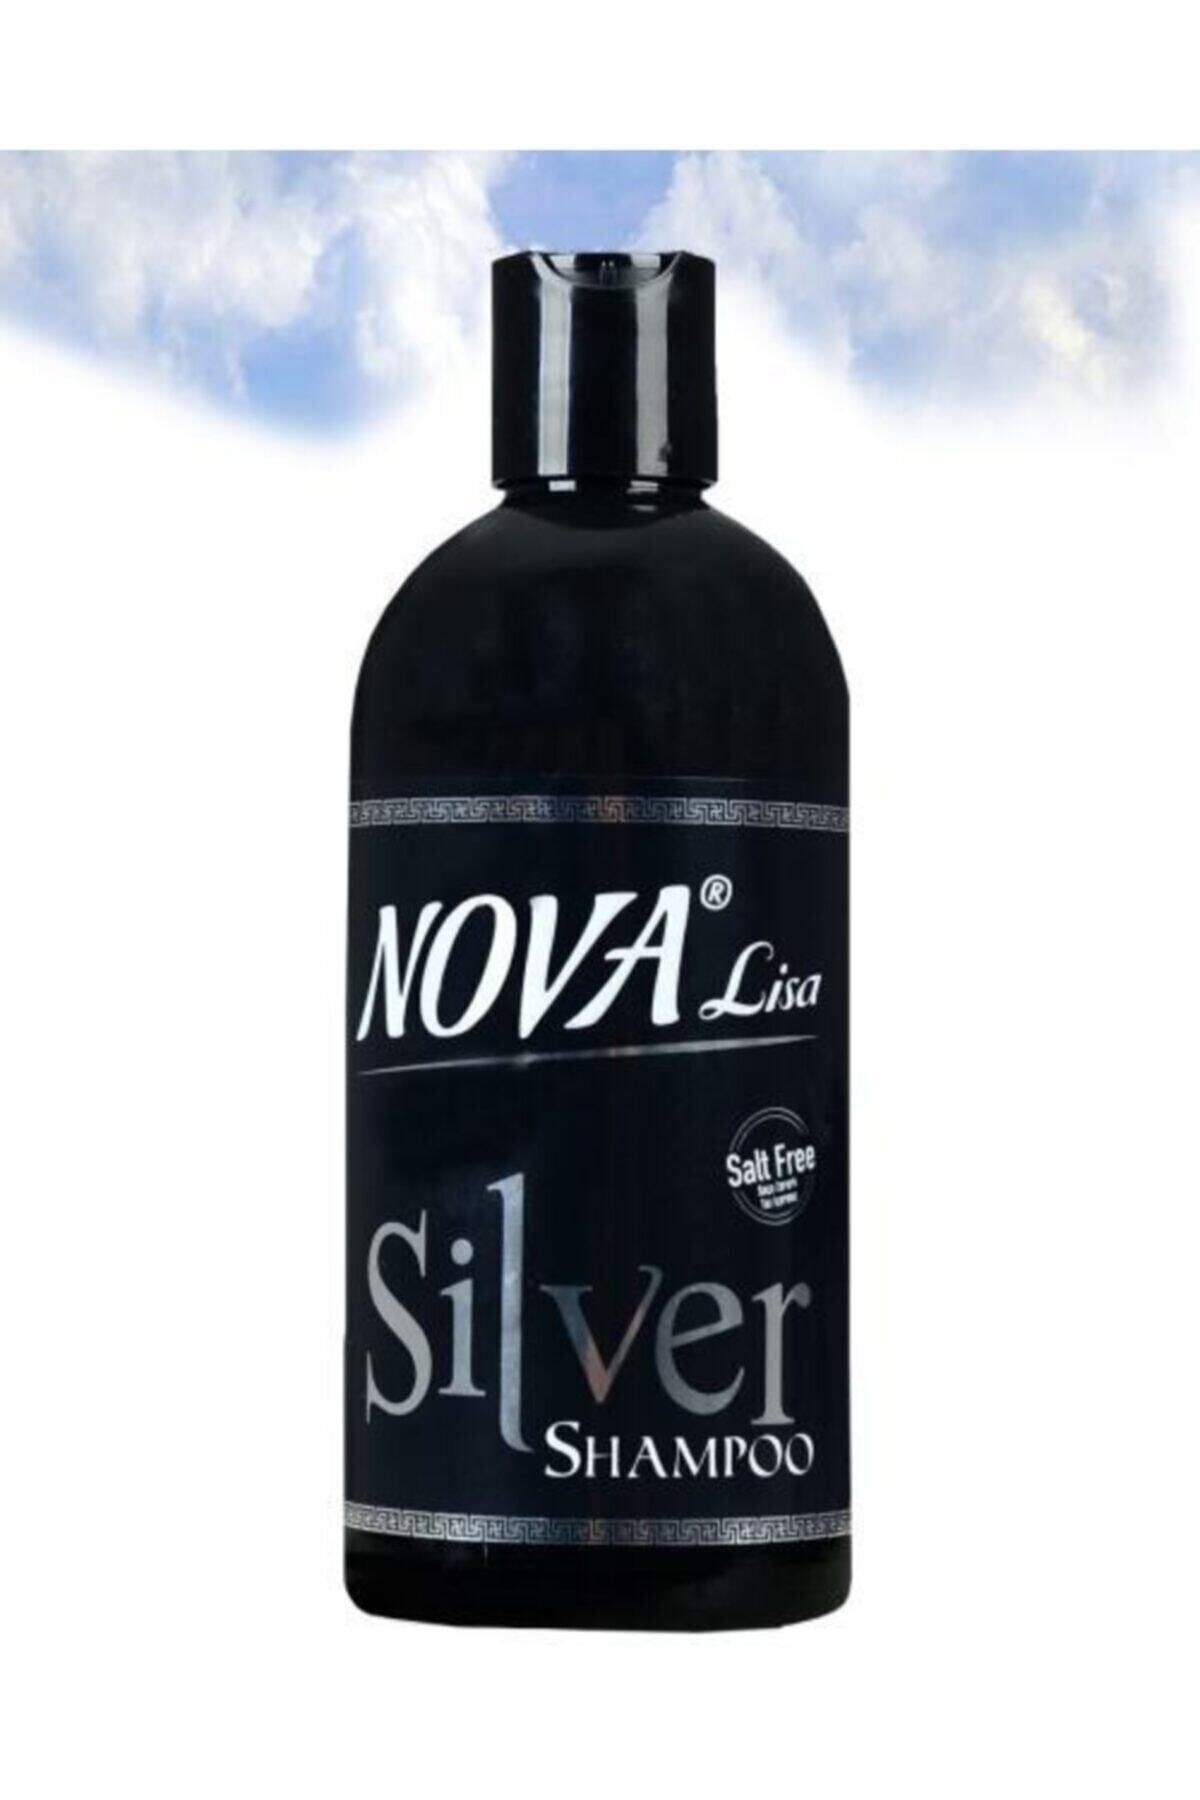 Nova Lisa Gri Ce Beyaz Saçlar Için Tuzsuz Süper Sılver Şampuan 500 Ml